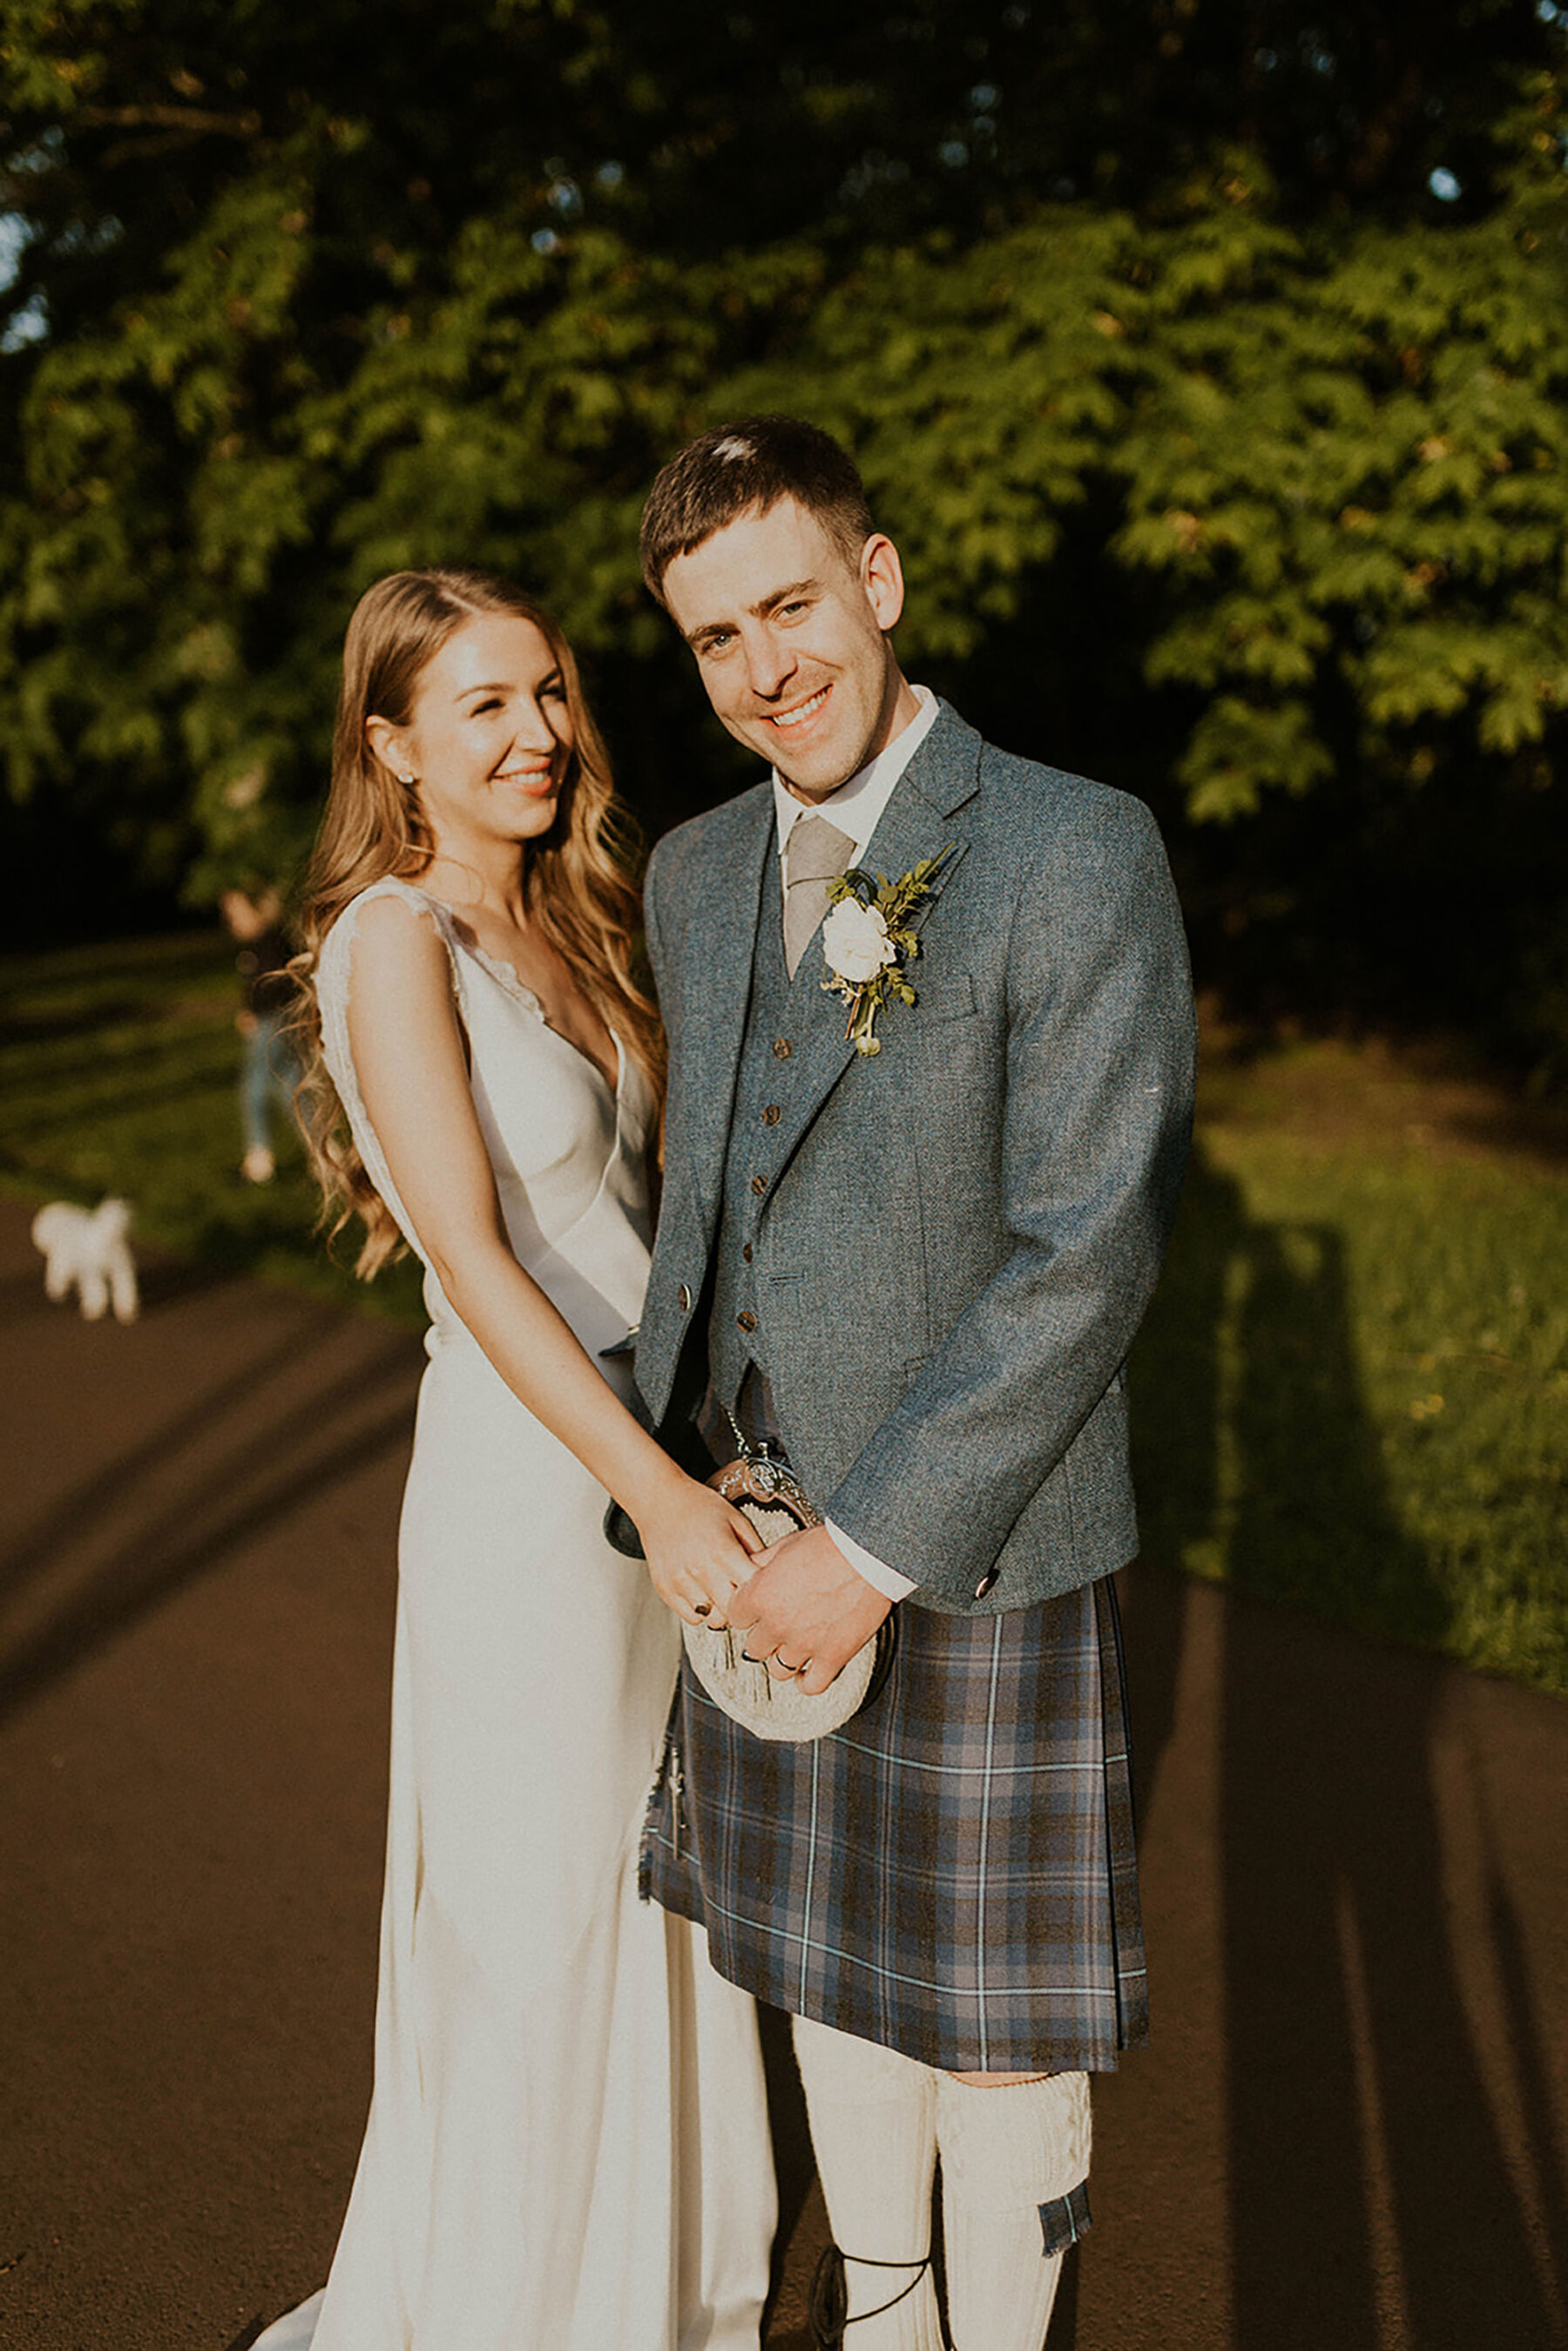 Scottish bride & groom. Bride wears Savannah Miller wedding dress. Groom in kilt.